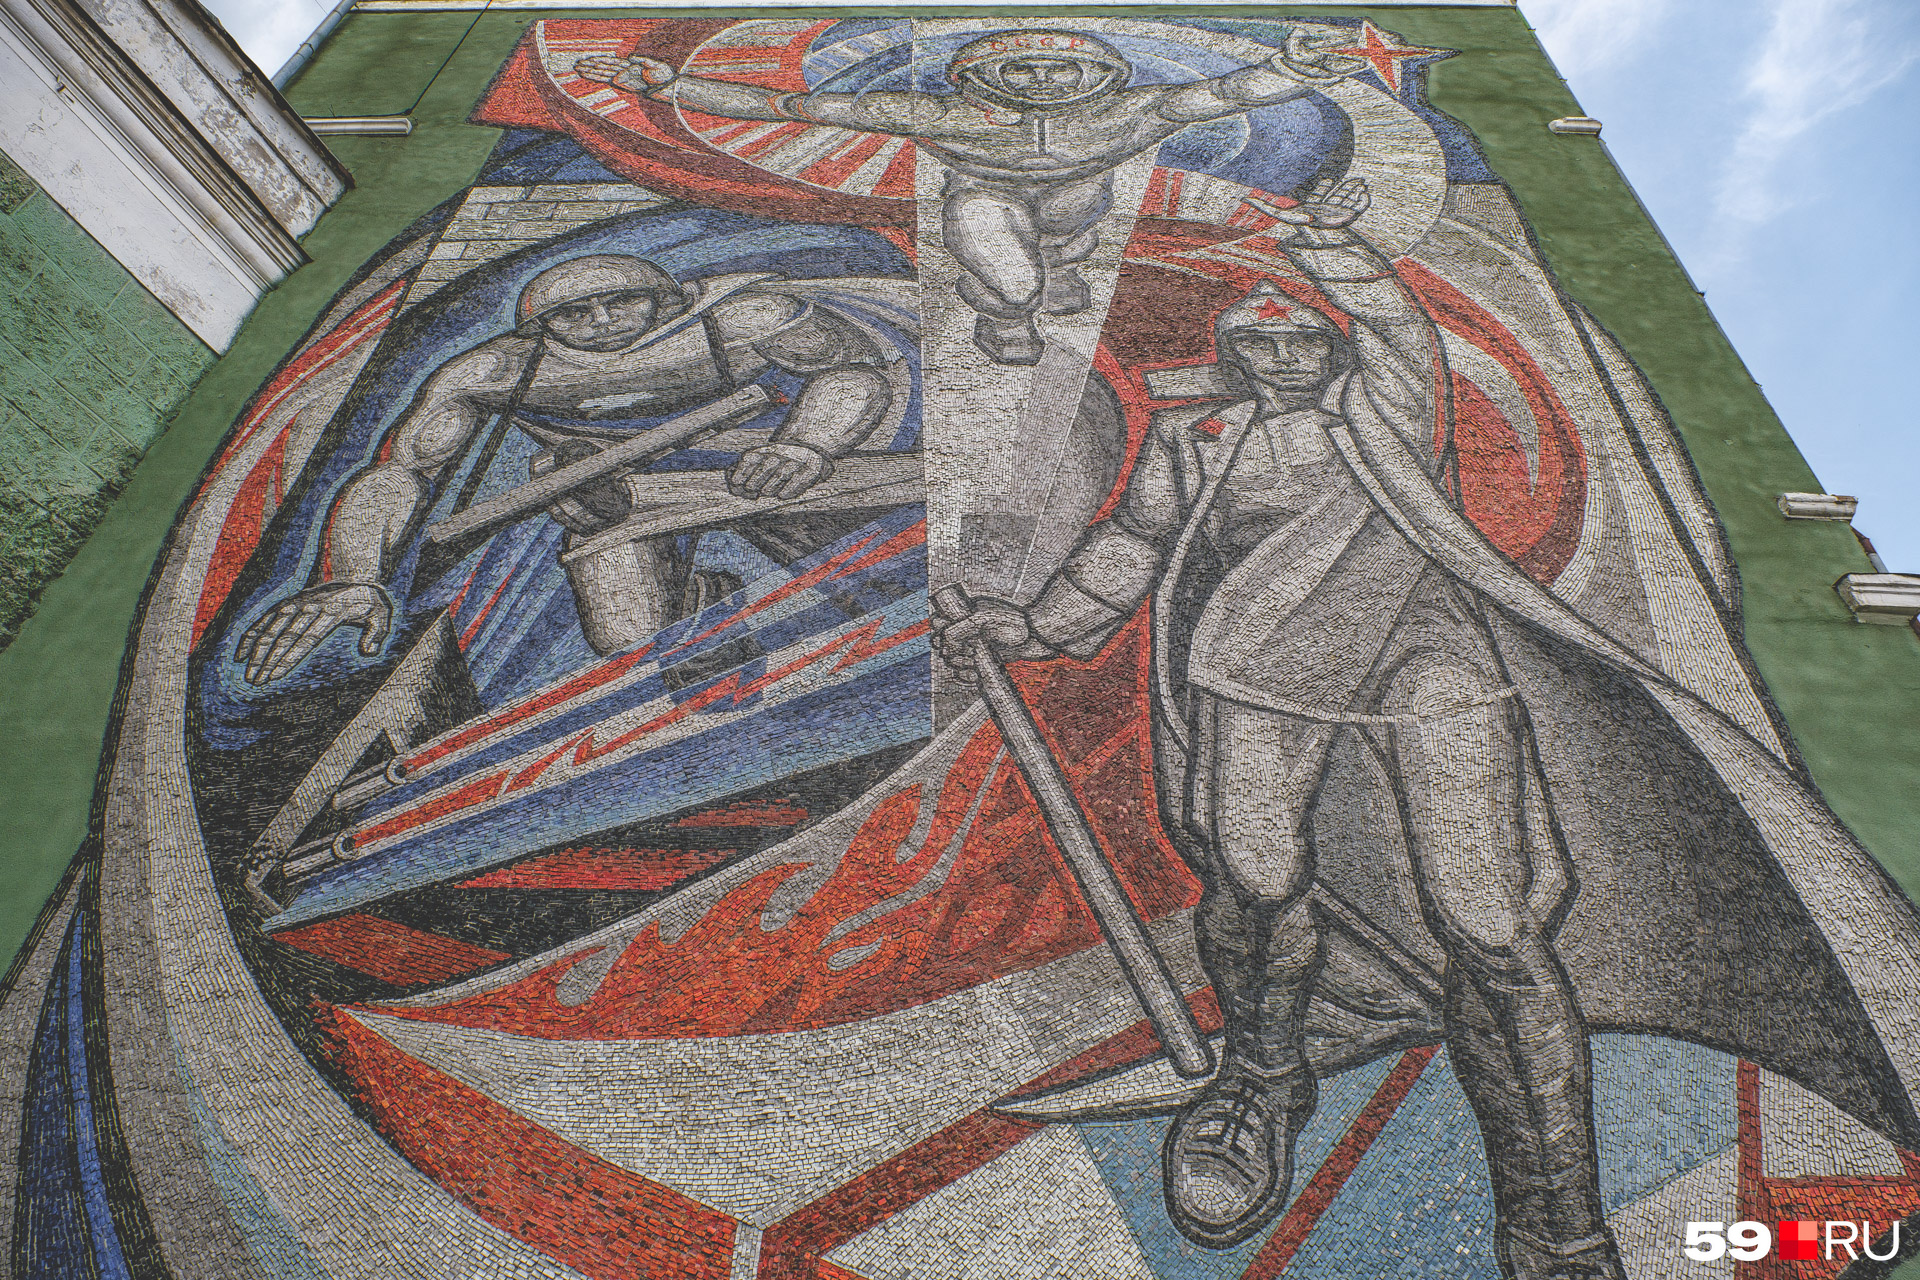 Многие узнают монументальную мозаику на площади Компроса